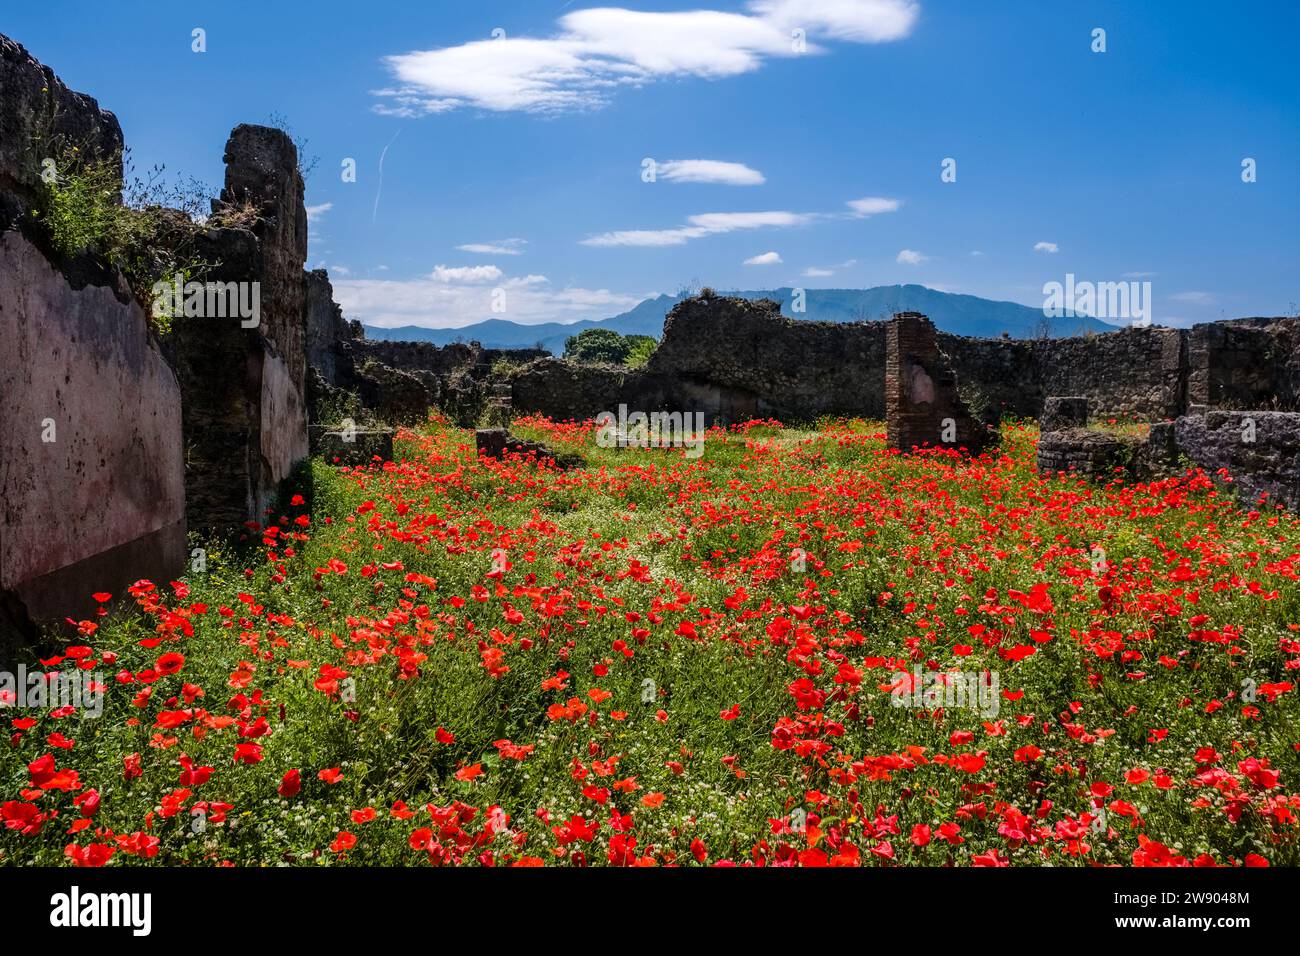 Ruinen und Mohnblumen in der archäologischen Stätte von Pompeji, einer antiken Stadt, die durch den Ausbruch des Vesuv im Jahr 79 n. Chr. zerstört wurde. Stockfoto